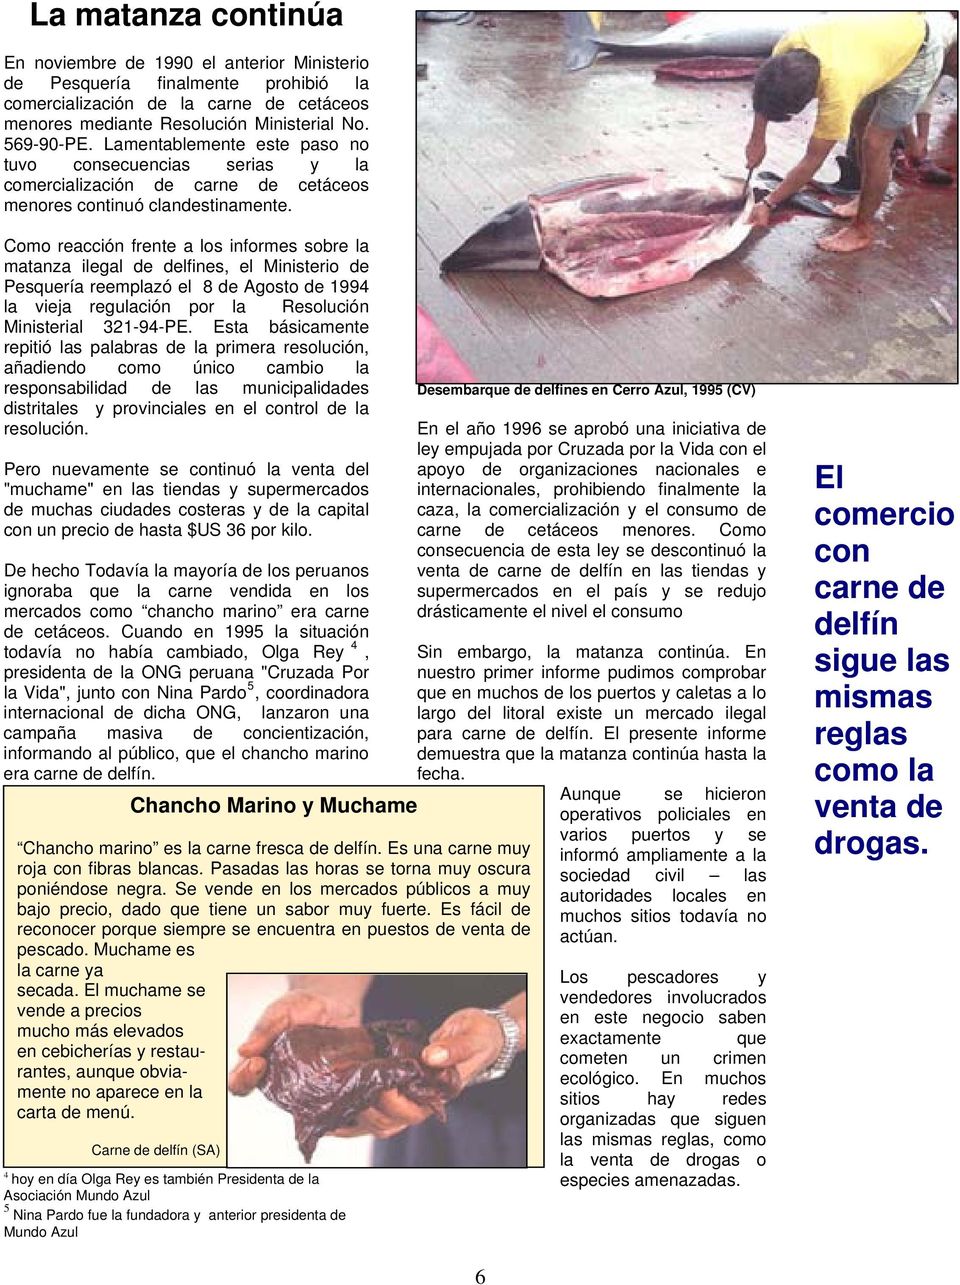 Como reacción frente a los informes sobre la matanza ilegal de delfines, el Ministerio de Pesquería reemplazó el 8 de Agosto de 1994 la vieja regulación por la Resolución Ministerial 321-94-PE.